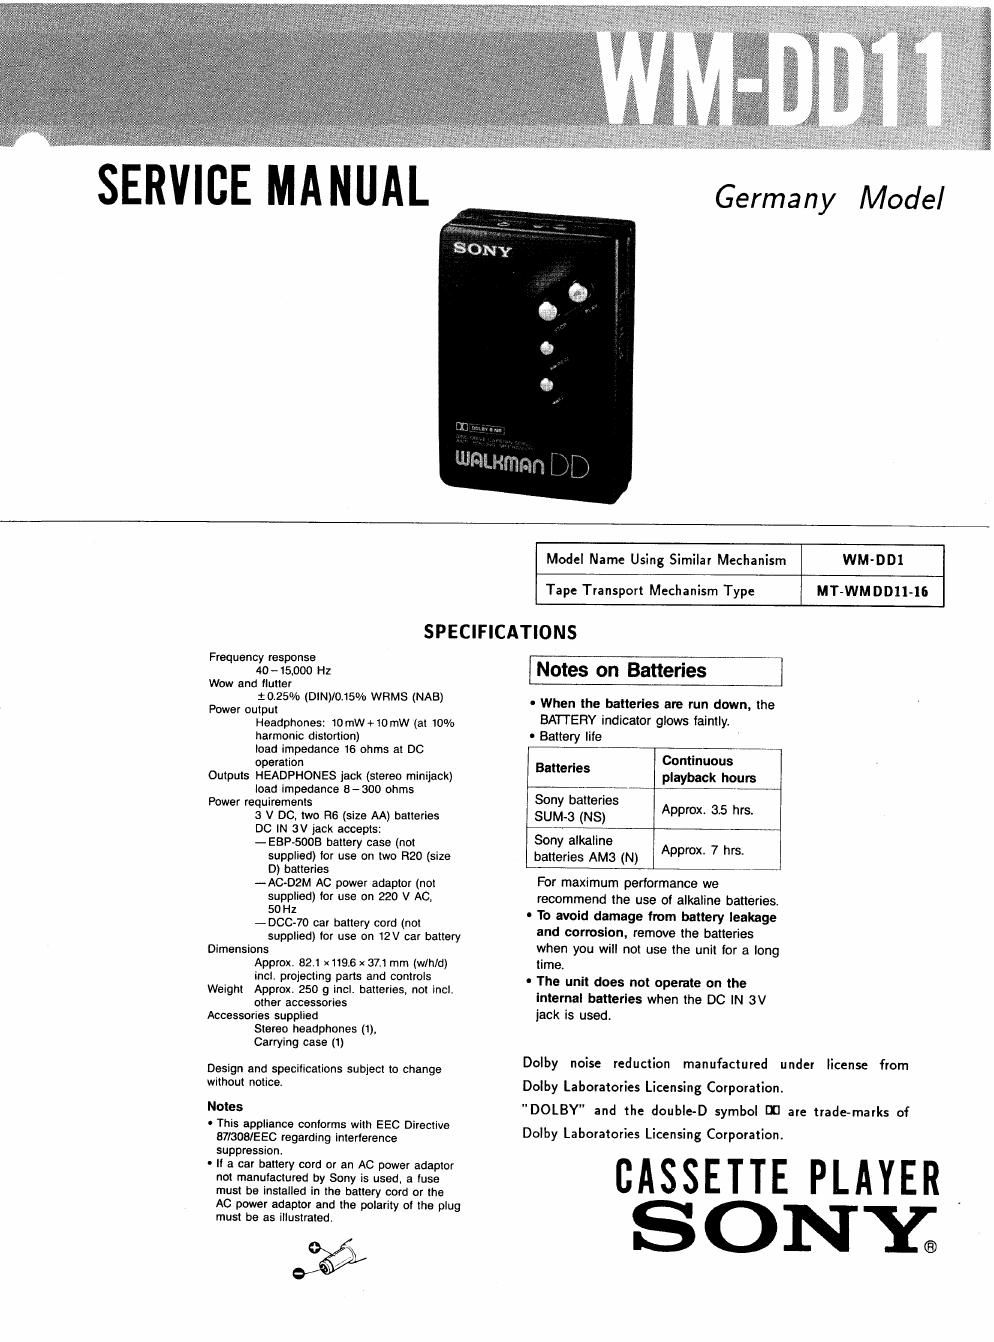 sony wm dd 11 service manual